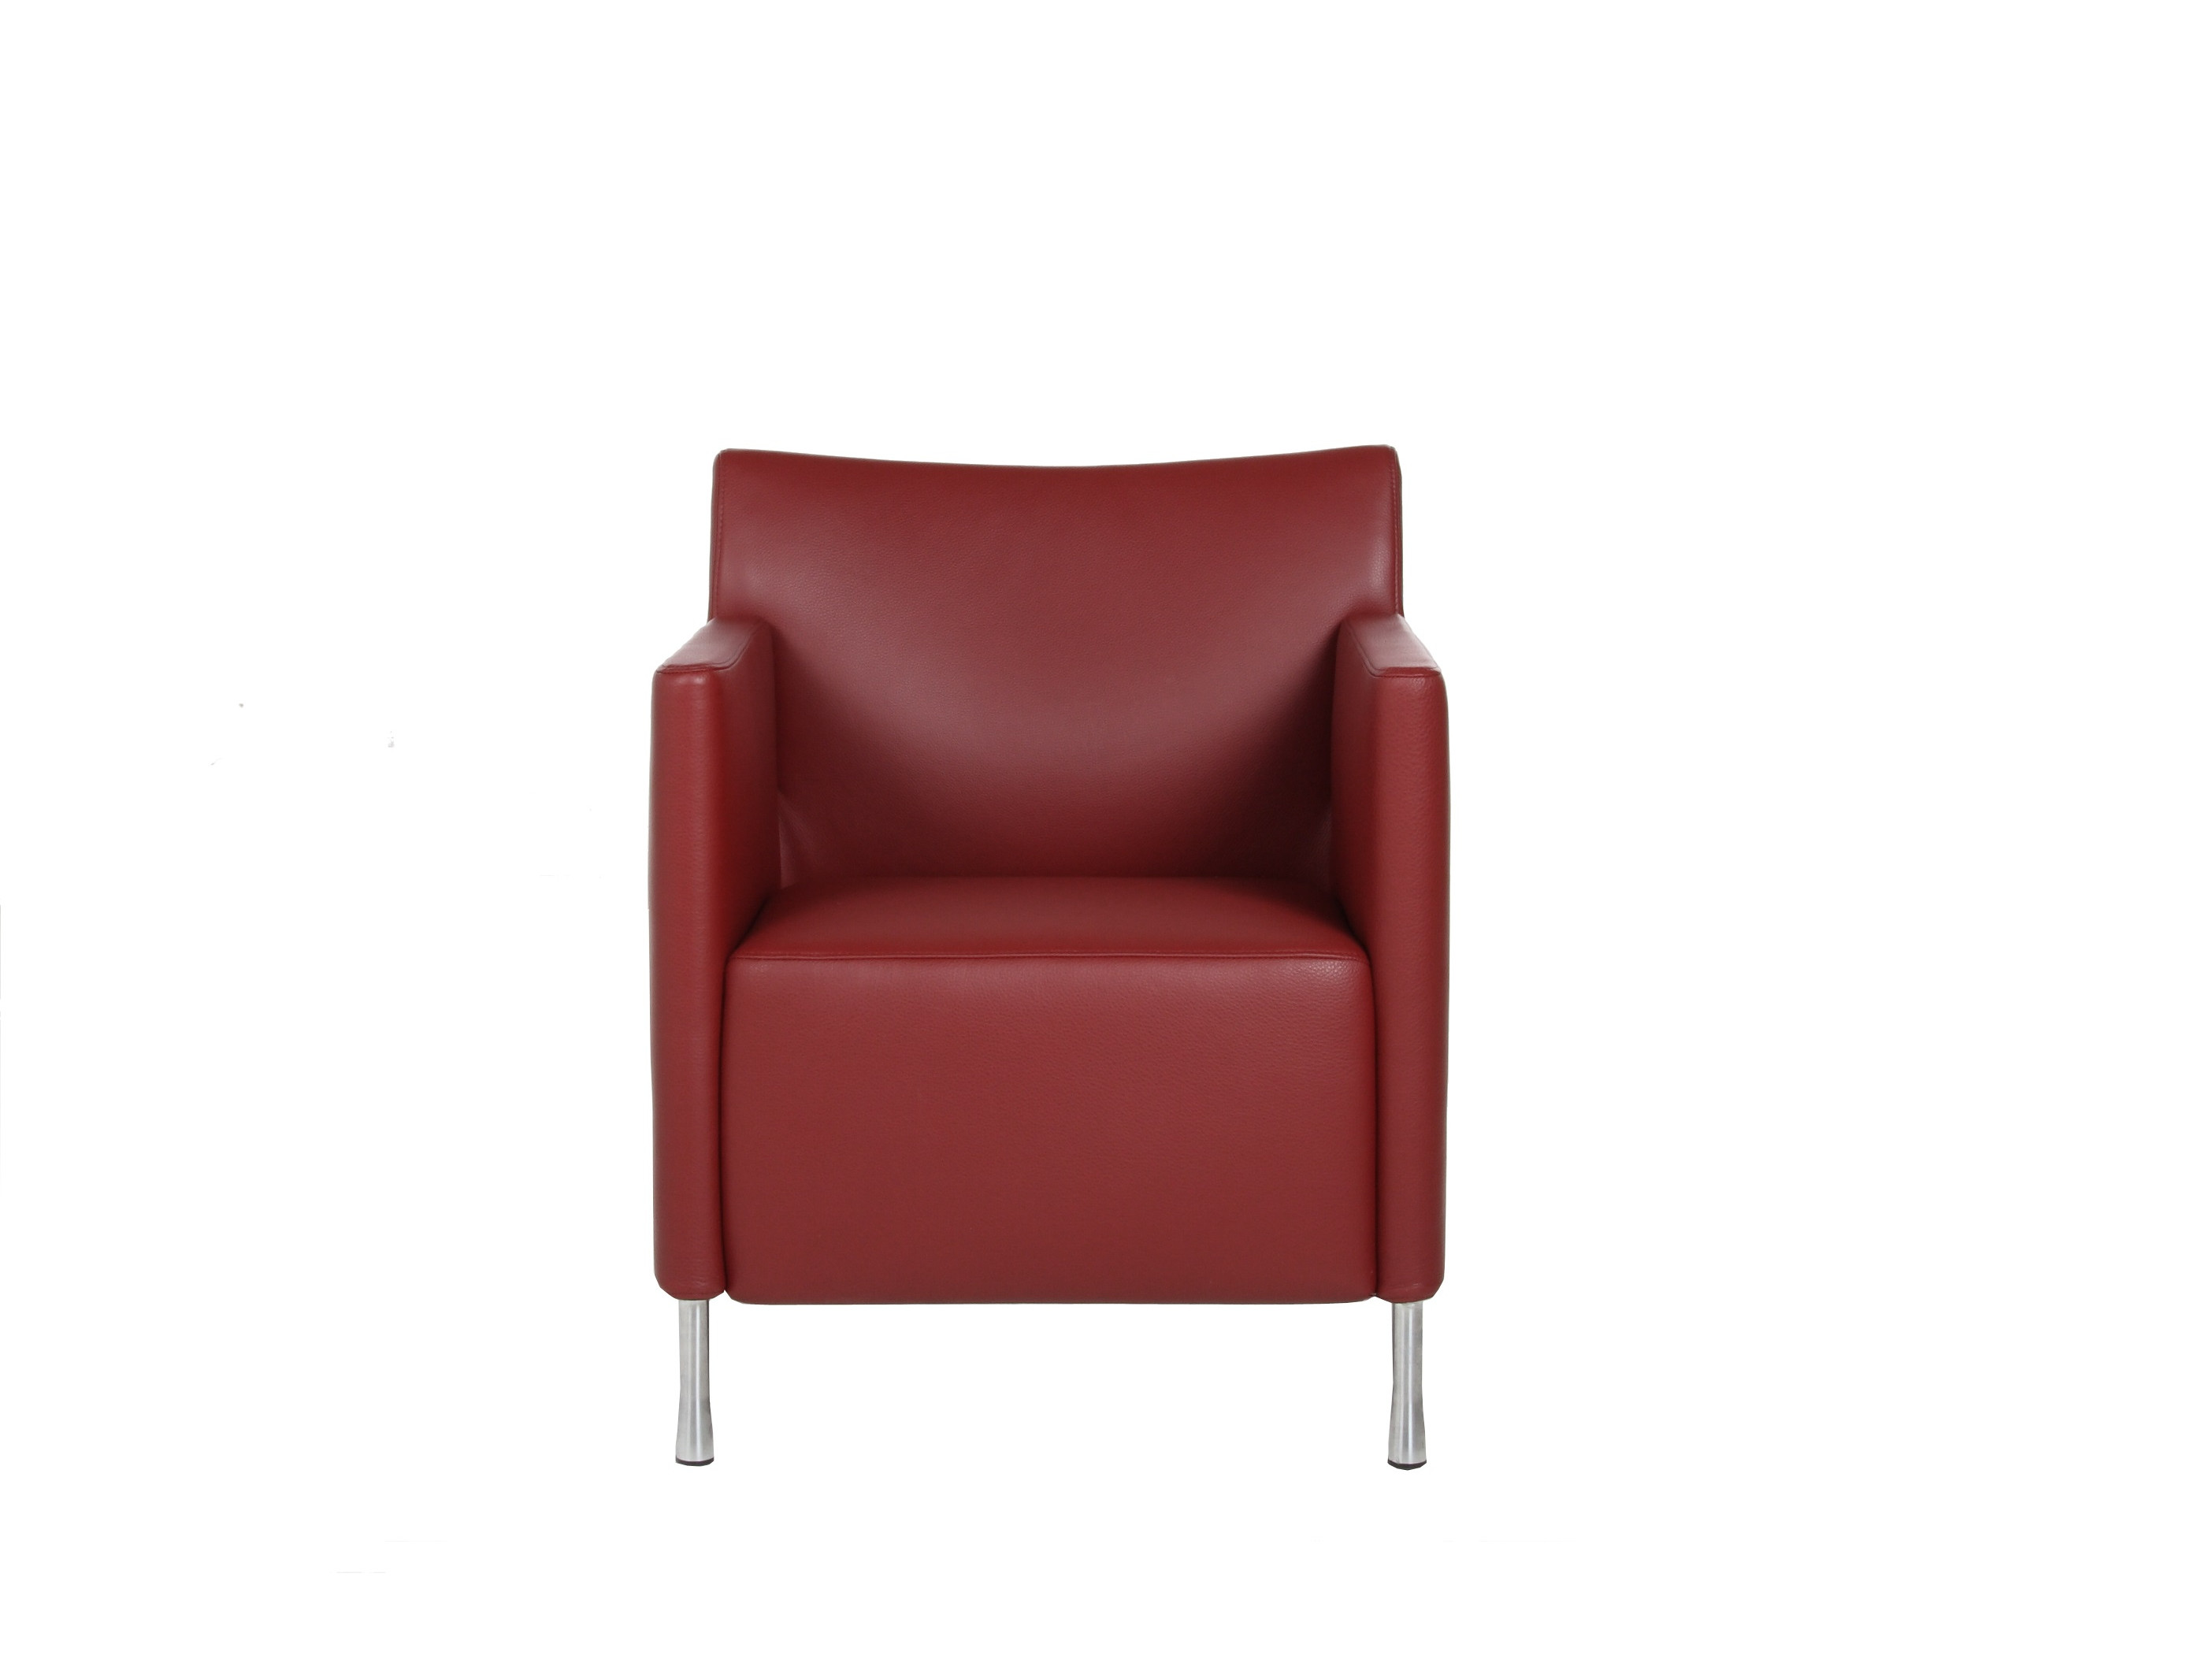 Productafbeelding van Gelderland fauteuil 6772